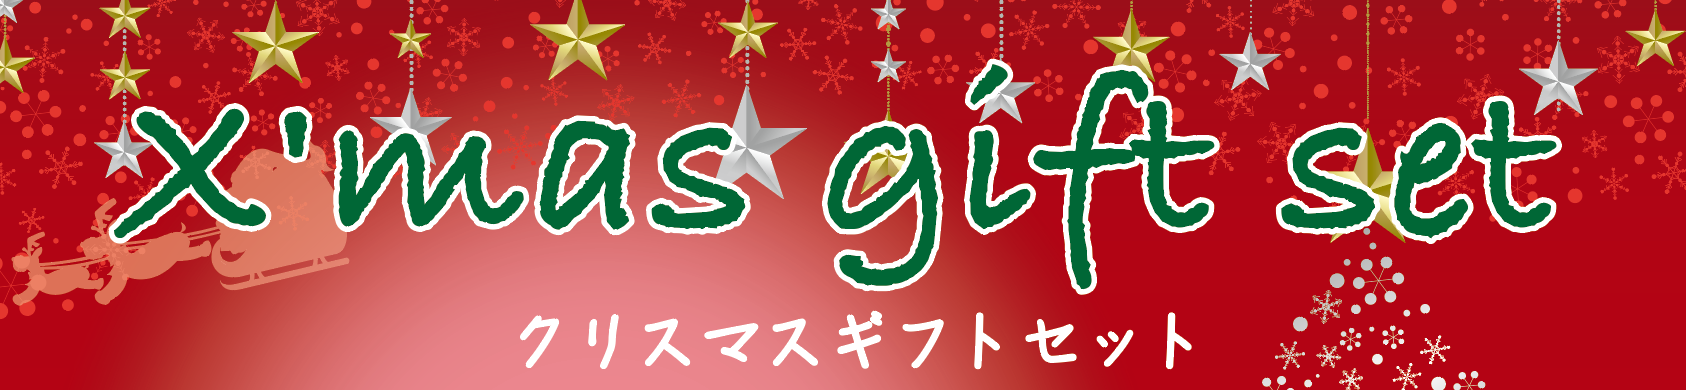 クリスマスギフトセット発売中!!